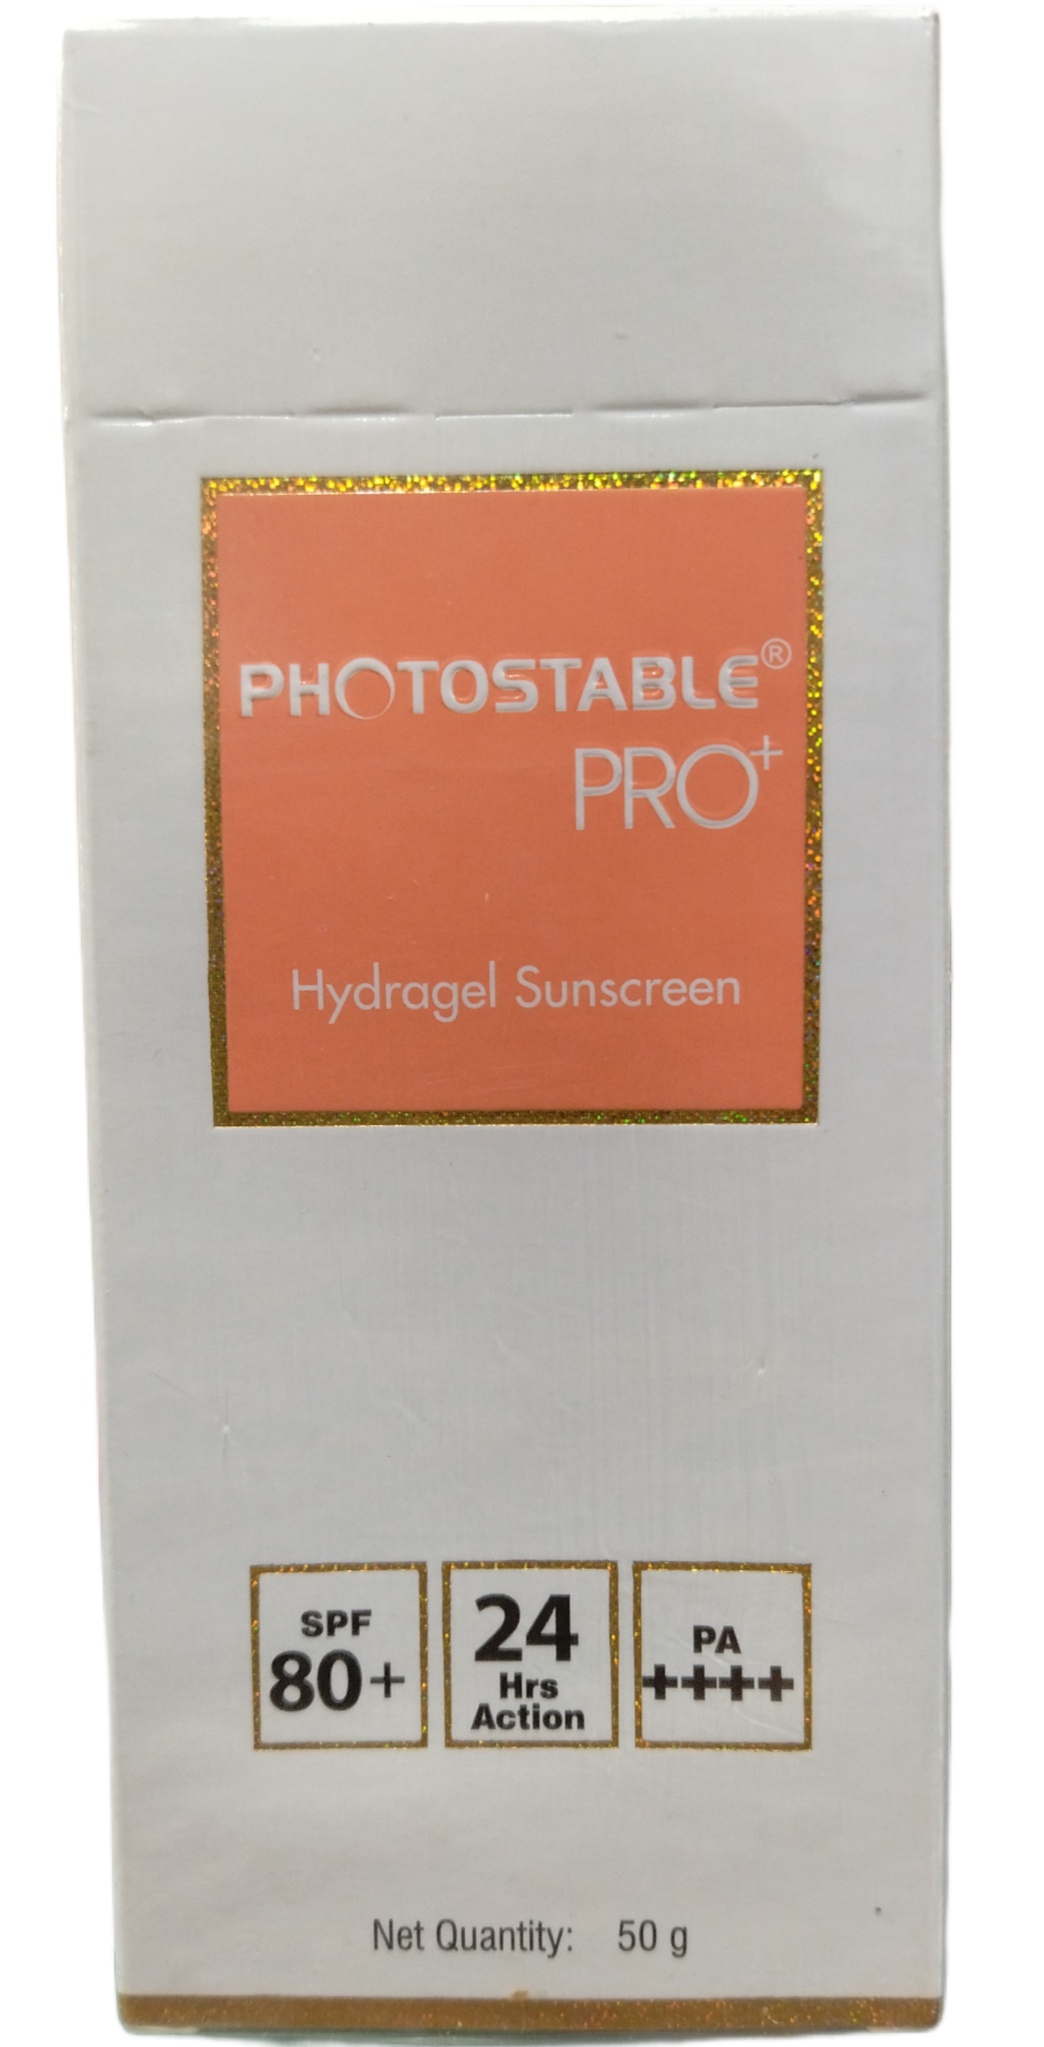 Sun Pharma Photostable Pro + Hydrogel Sunscreen